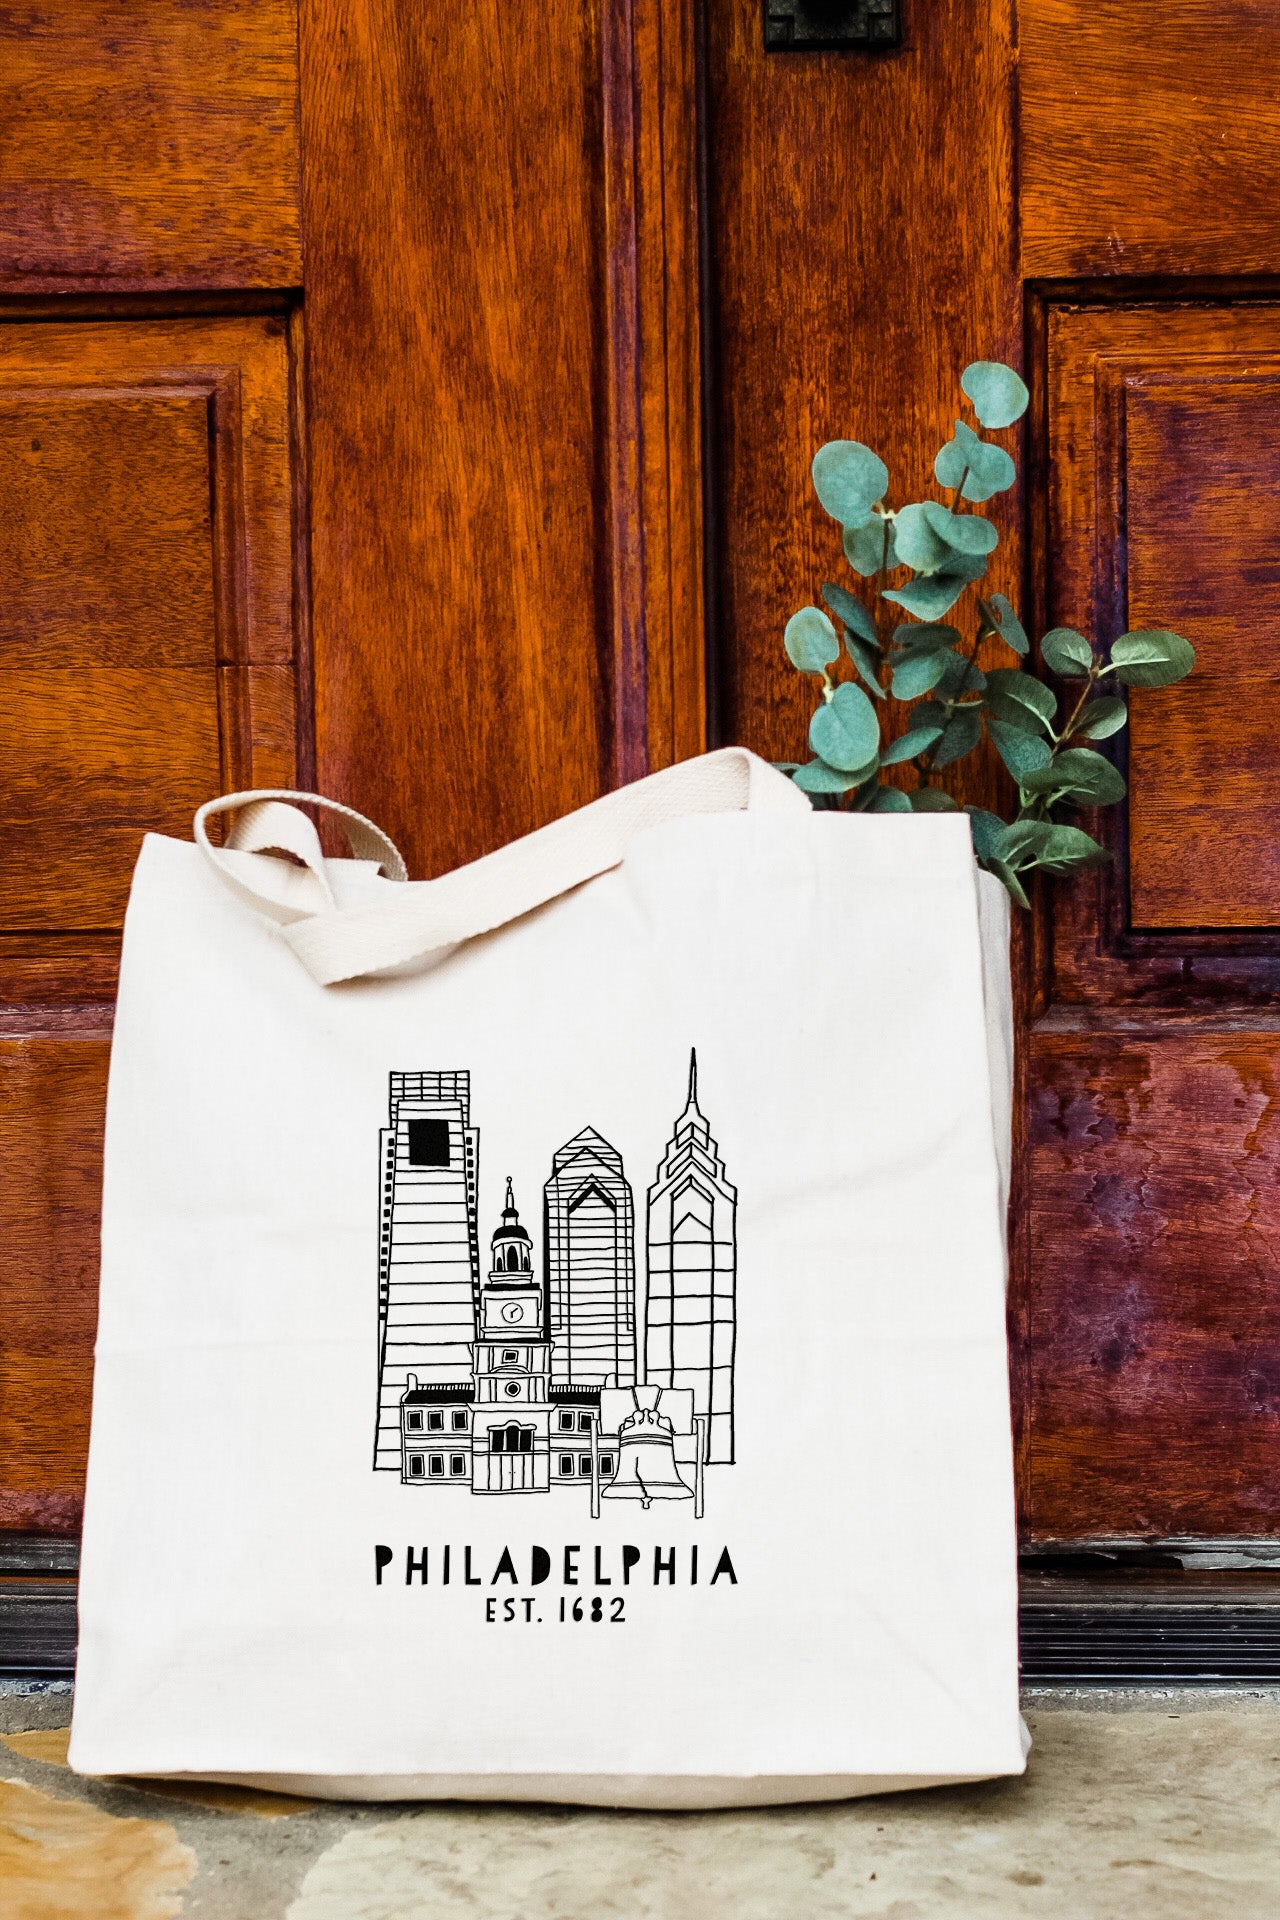 Downtown Philadelphia, PA - Tote Bag